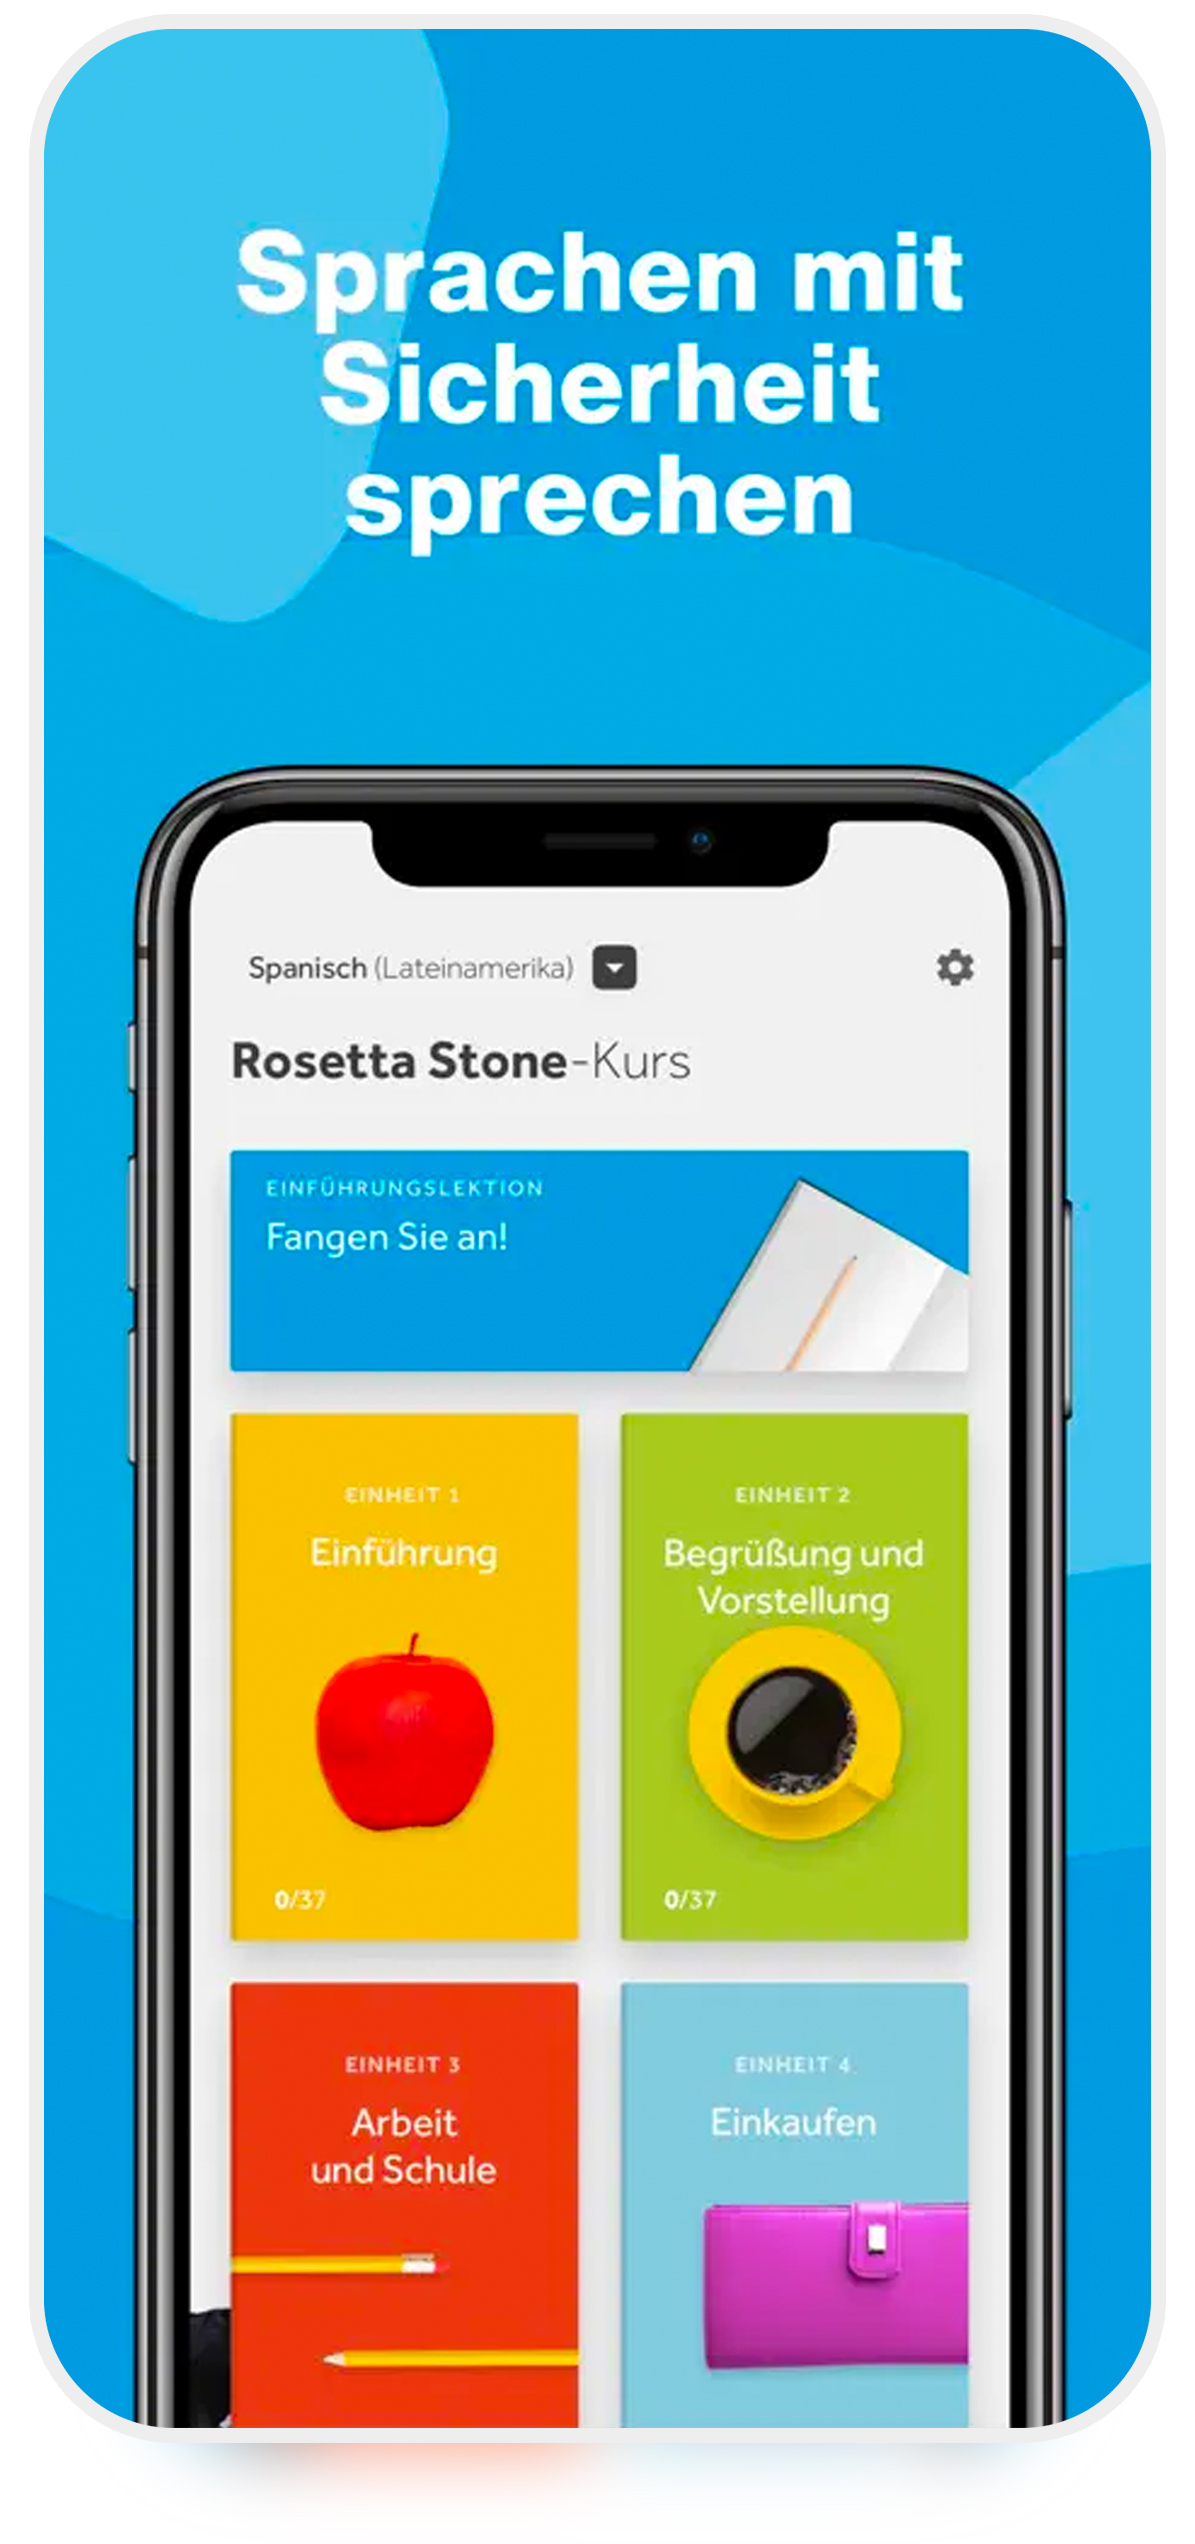 رزتا استون (Rosetta Stone) بهترین اپ آموزش زبان آلمانی برای اندروید و iOS